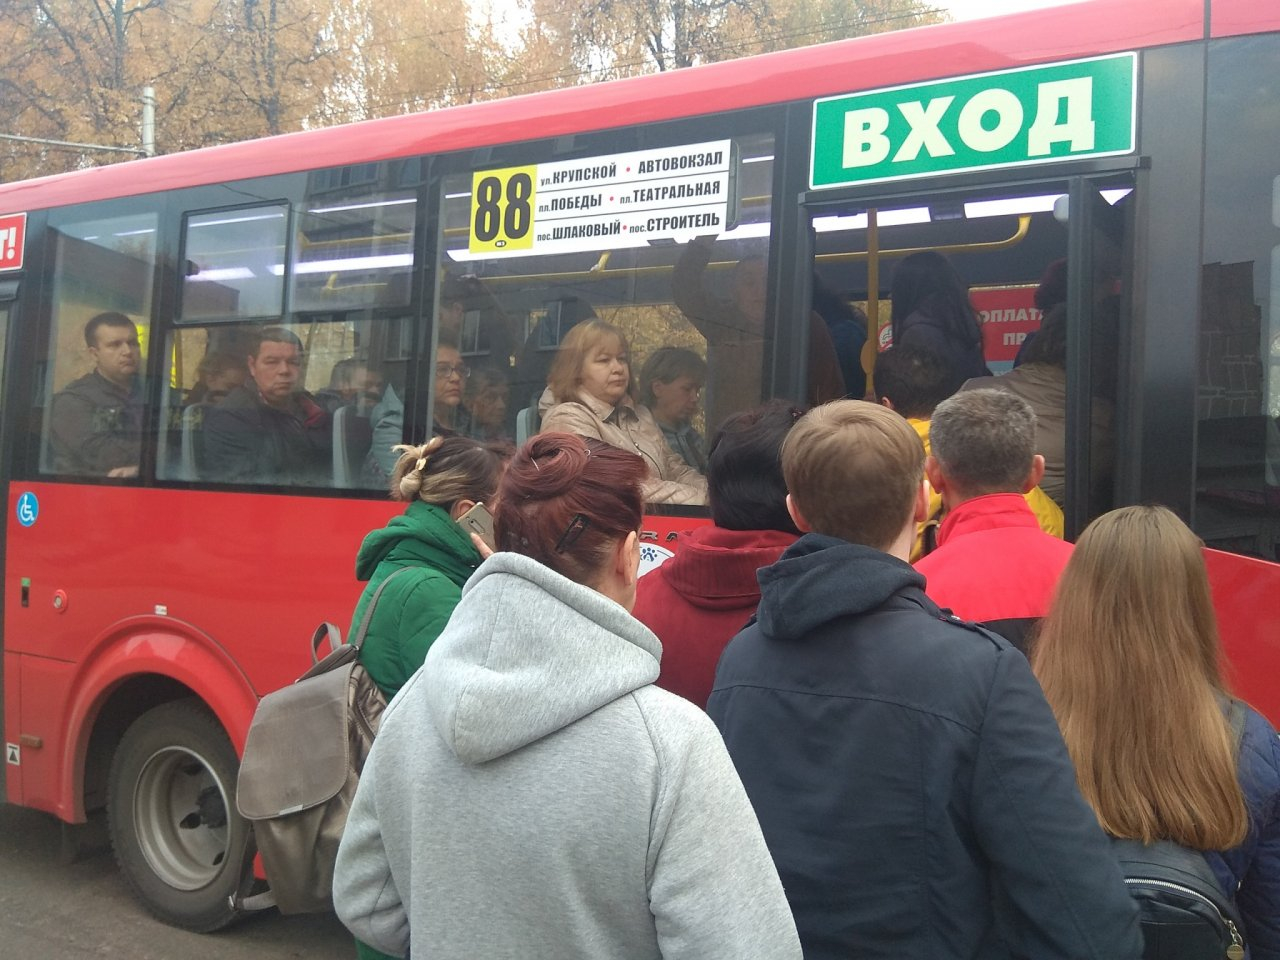 "Добираемся на работу больше часа!" – от рязанцев поступают жалобы на новый автобус 88 маршрута